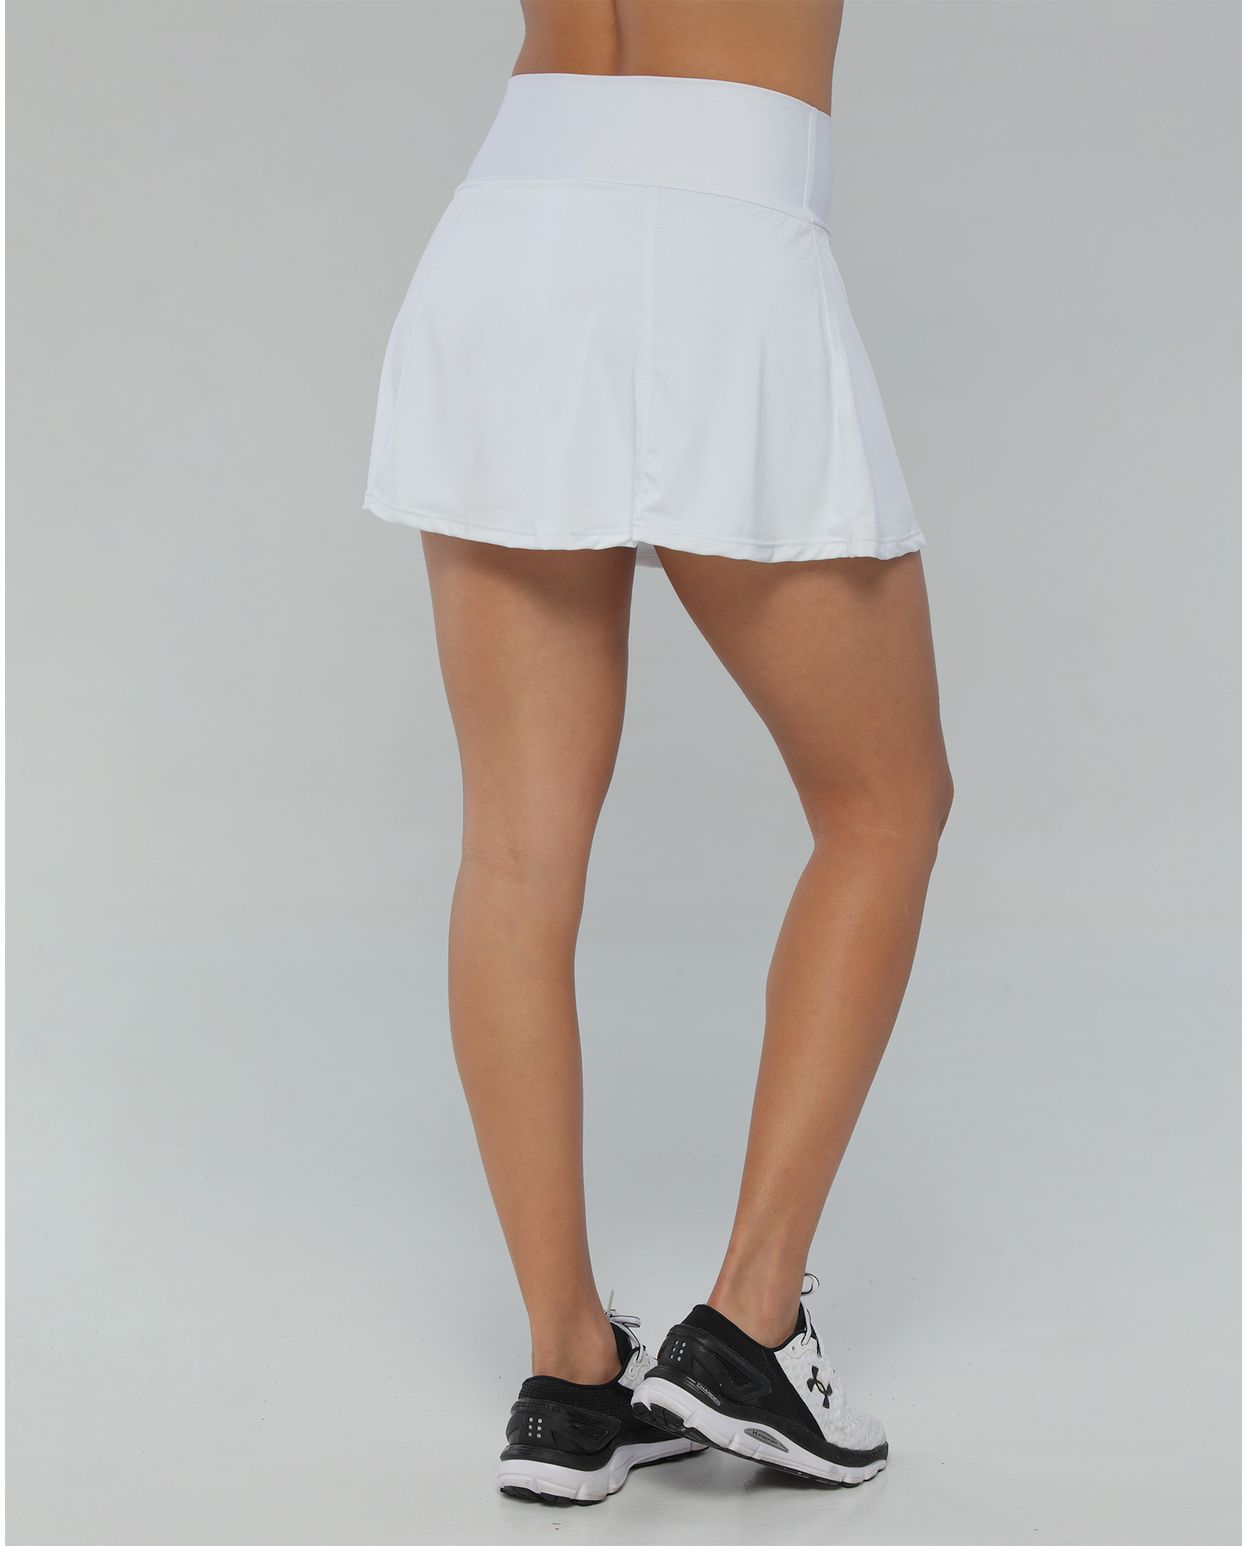 Falda deportiva para mujer, con licra, color blanco - racketball movil